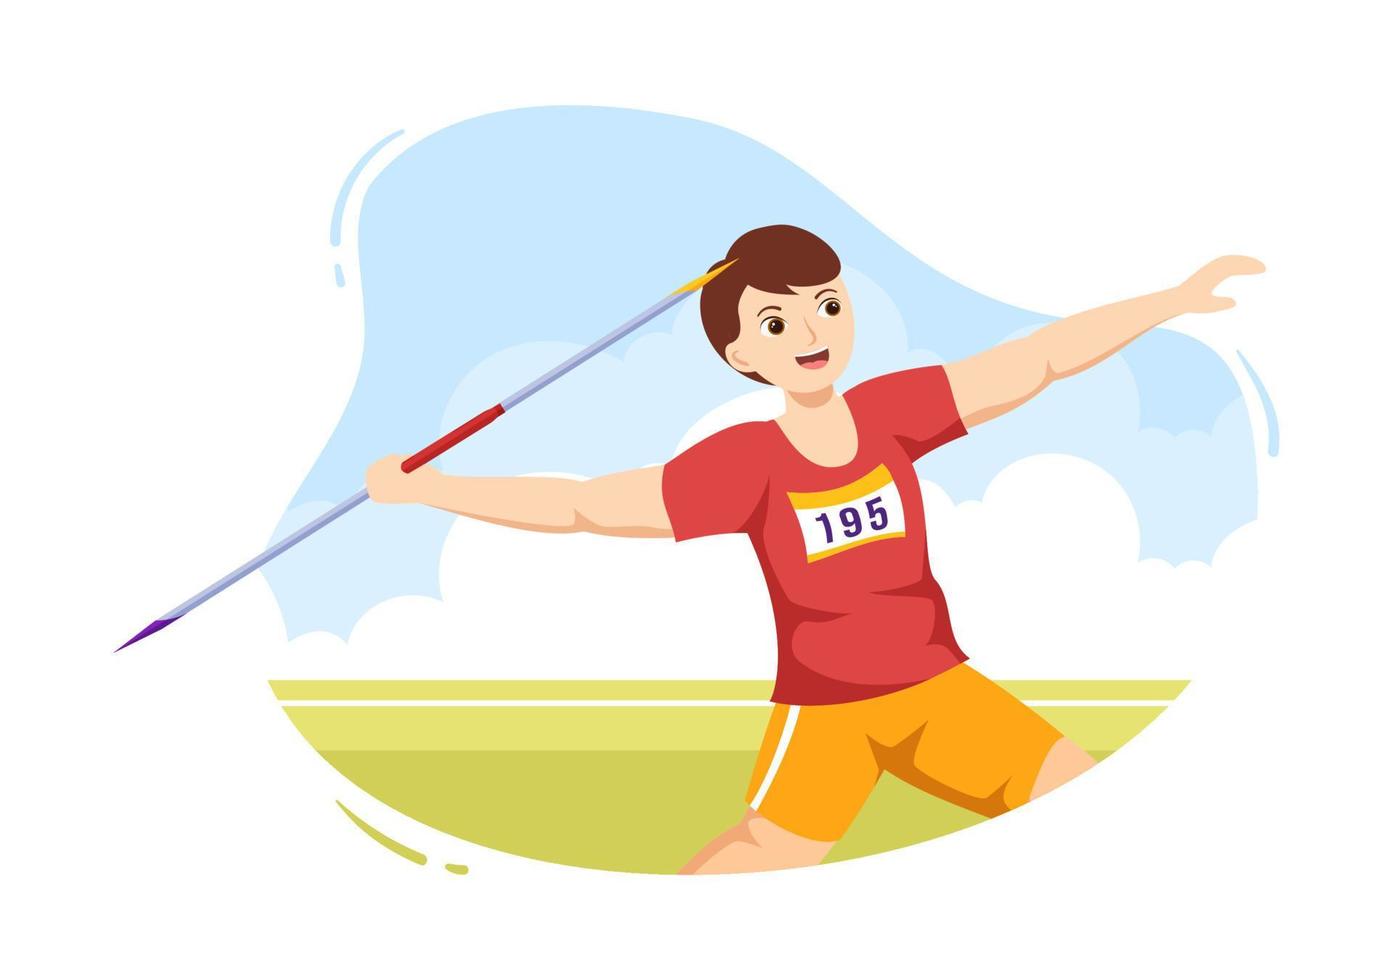 ilustração de atleta de lançamento de dardo usando uma ferramenta em forma de lança longa para lançar em atividade esportiva modelo desenhado à mão de desenho animado plano vetor